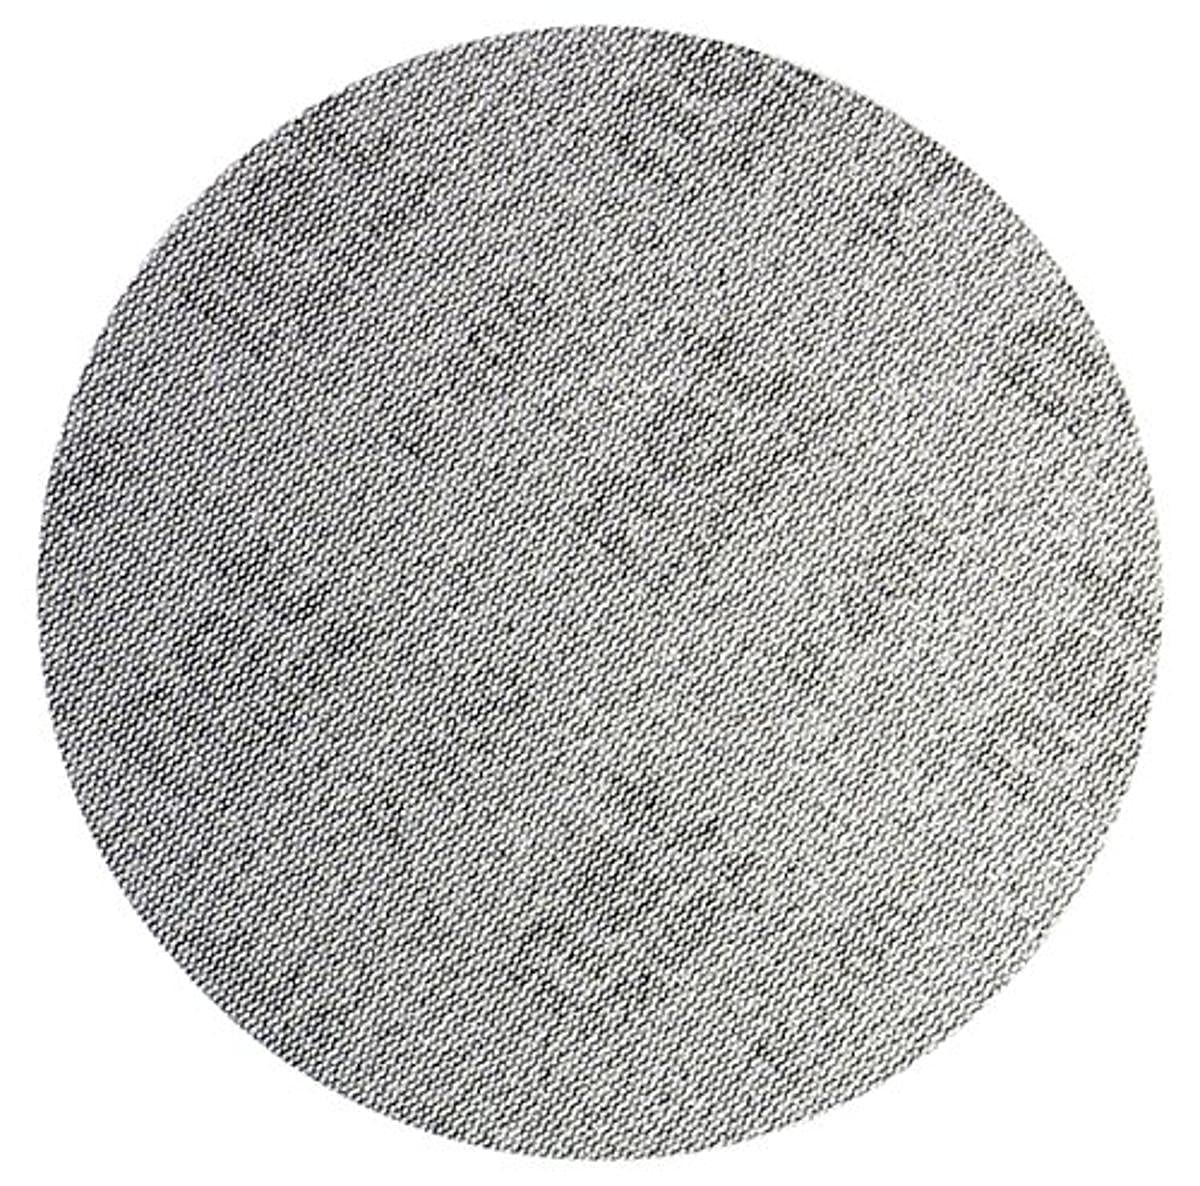 Mirka AE24105080 Autonet Sanding Disc - 150mm Grip - P80 Grit - Körnung: Aluminiumoxid auf Kunstharz über Kunstharz - PA Netz / PES Netz - Beschichtung: Geschlossen - Grau - Packung enthält 50 Stück